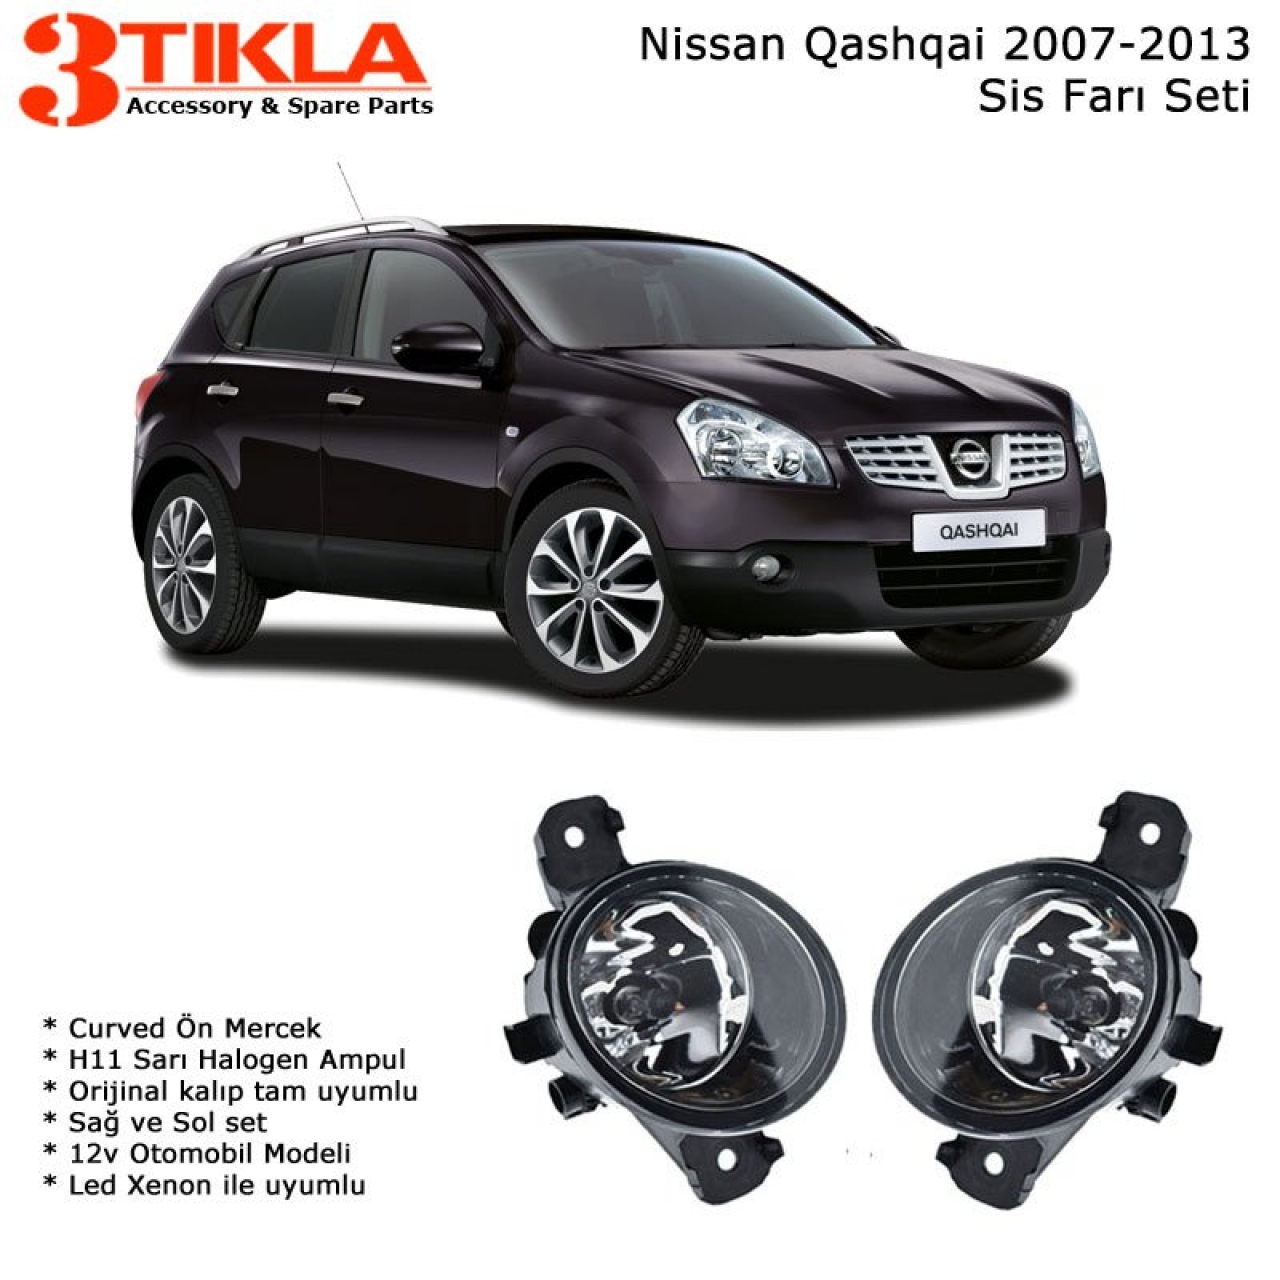 Nissan Qashqai 2007-2013 Led Xenonlu Sis Farı Set  Oem:  8200002469-70